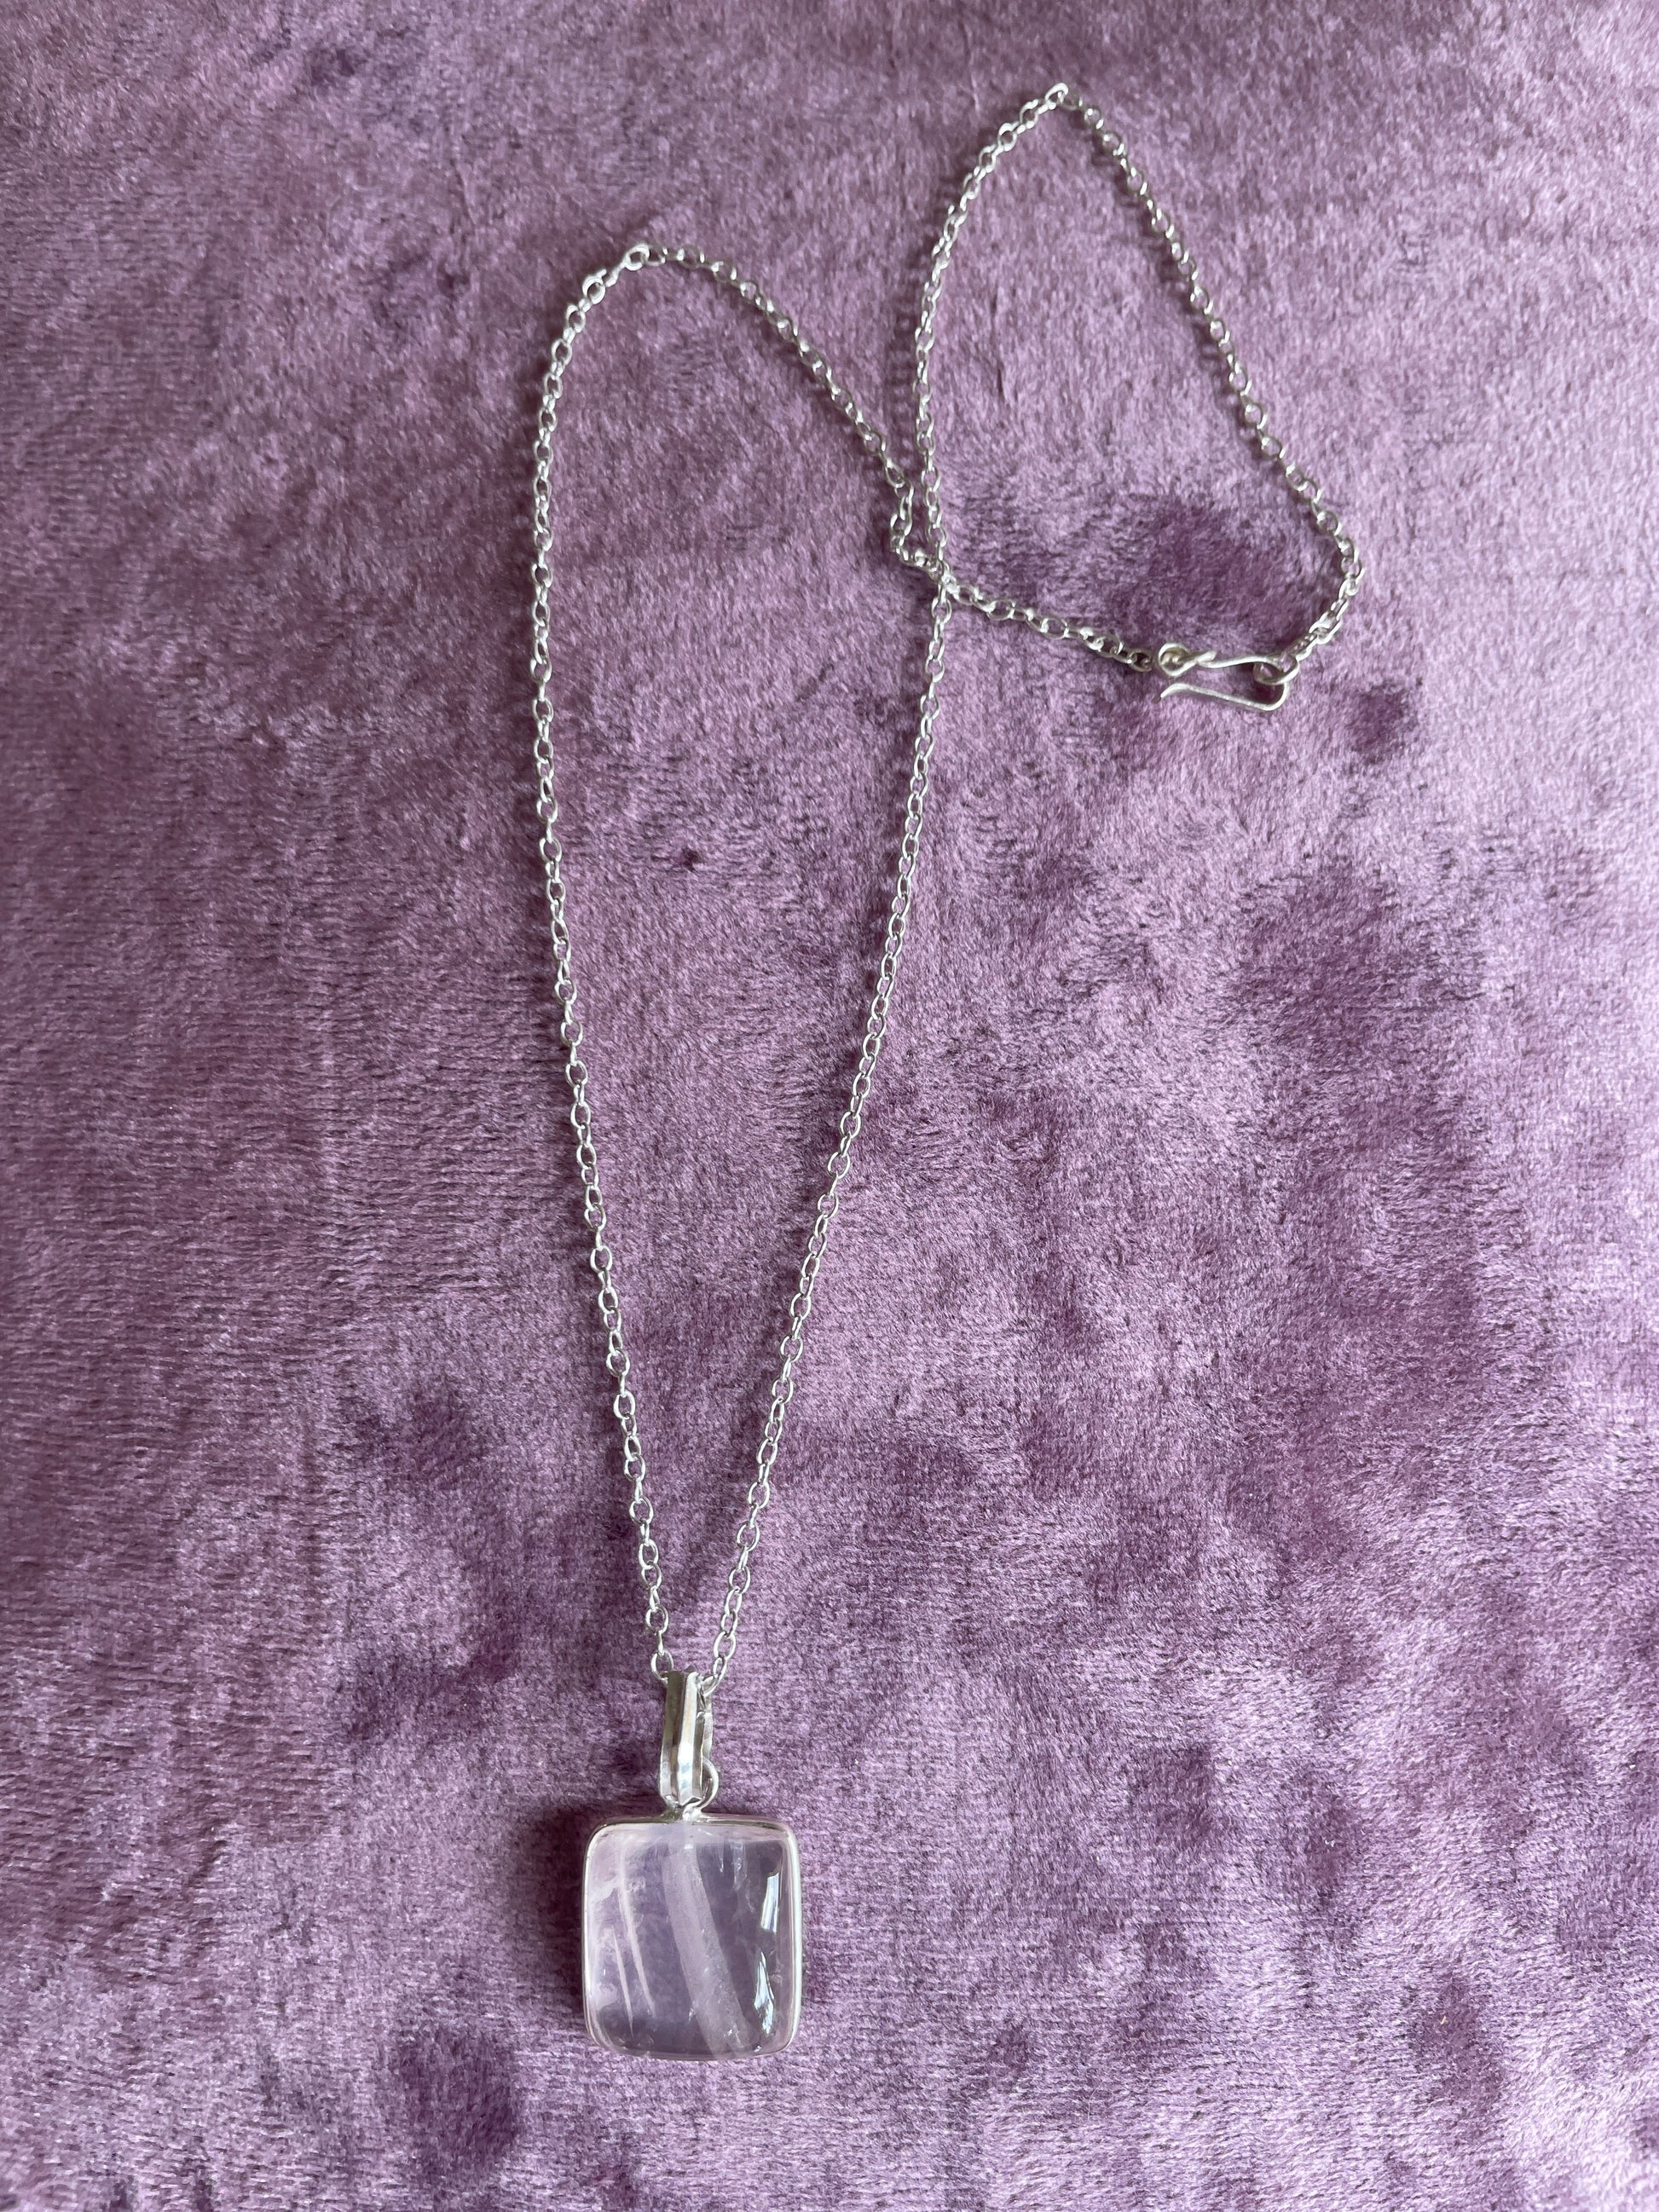 Rose Quartz pendant necklace  2000s Rose Quartz Pendant Sterling Silver Plated Necklace